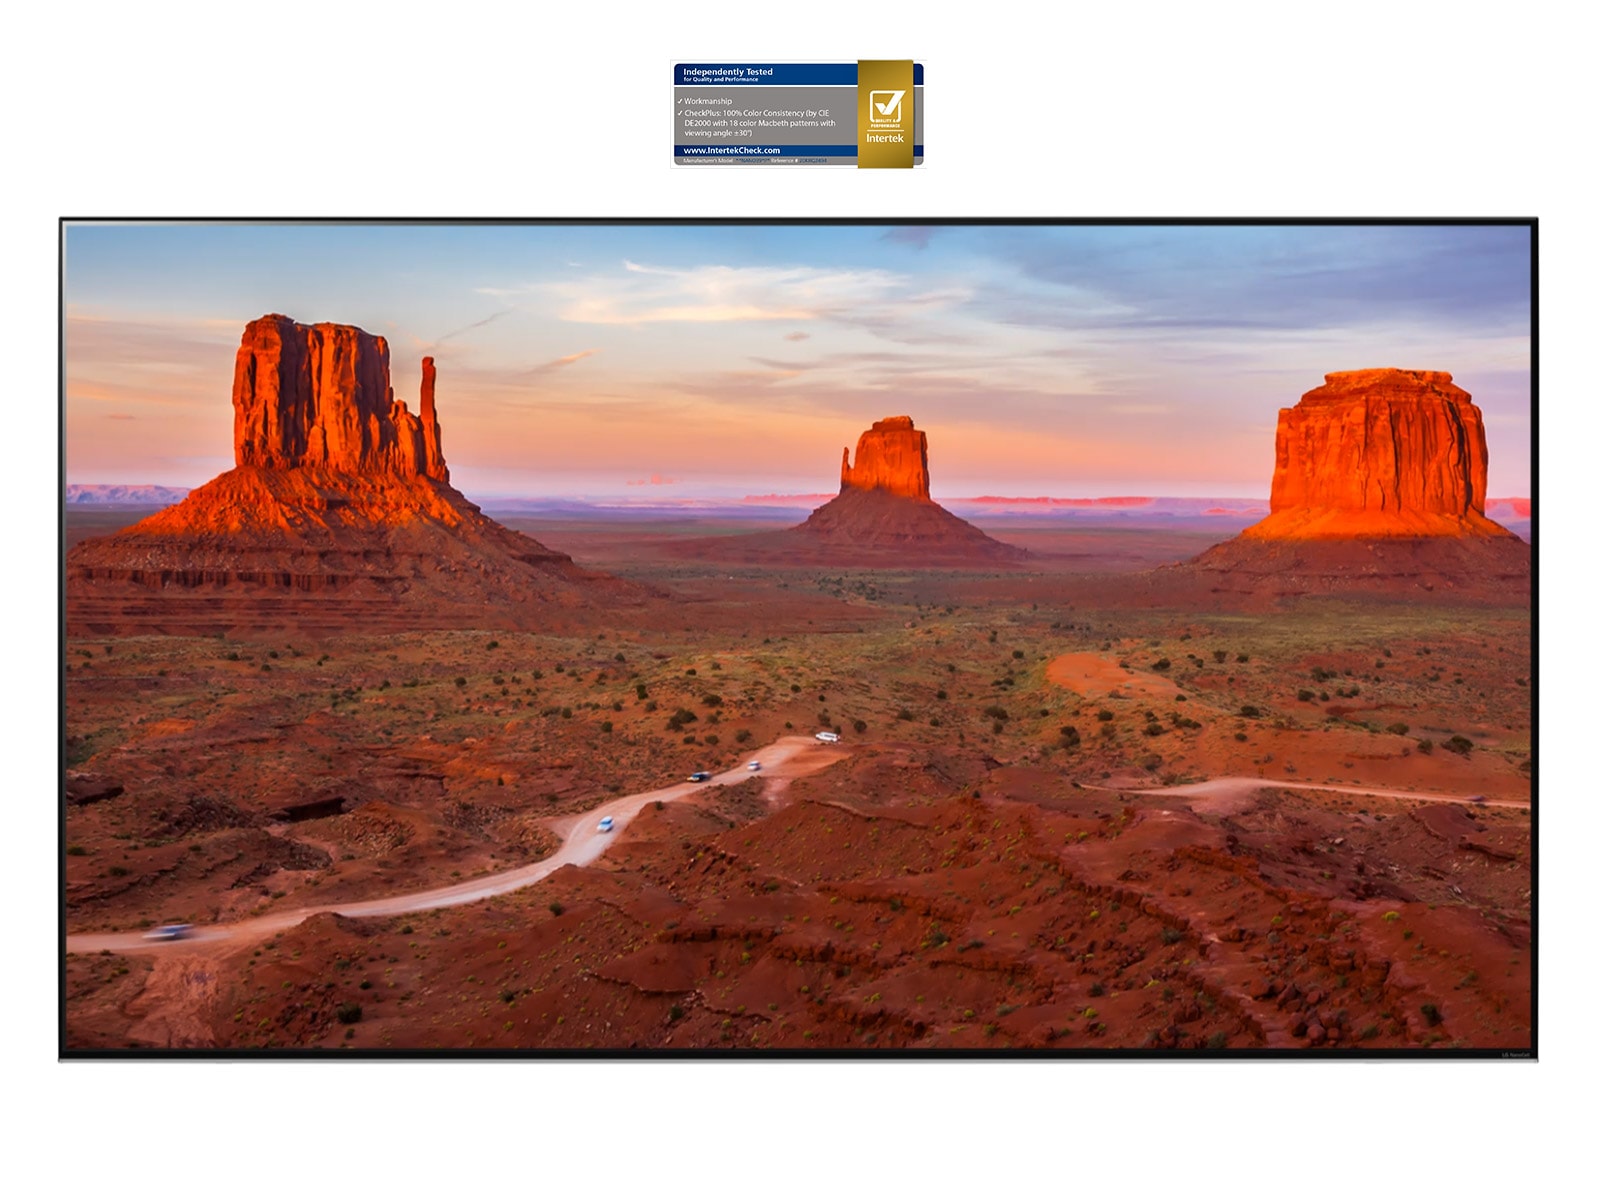 Экран телевизора с великолепным пейзажем, демонстрирующий точность изображения под любым углом (просмотр видео).